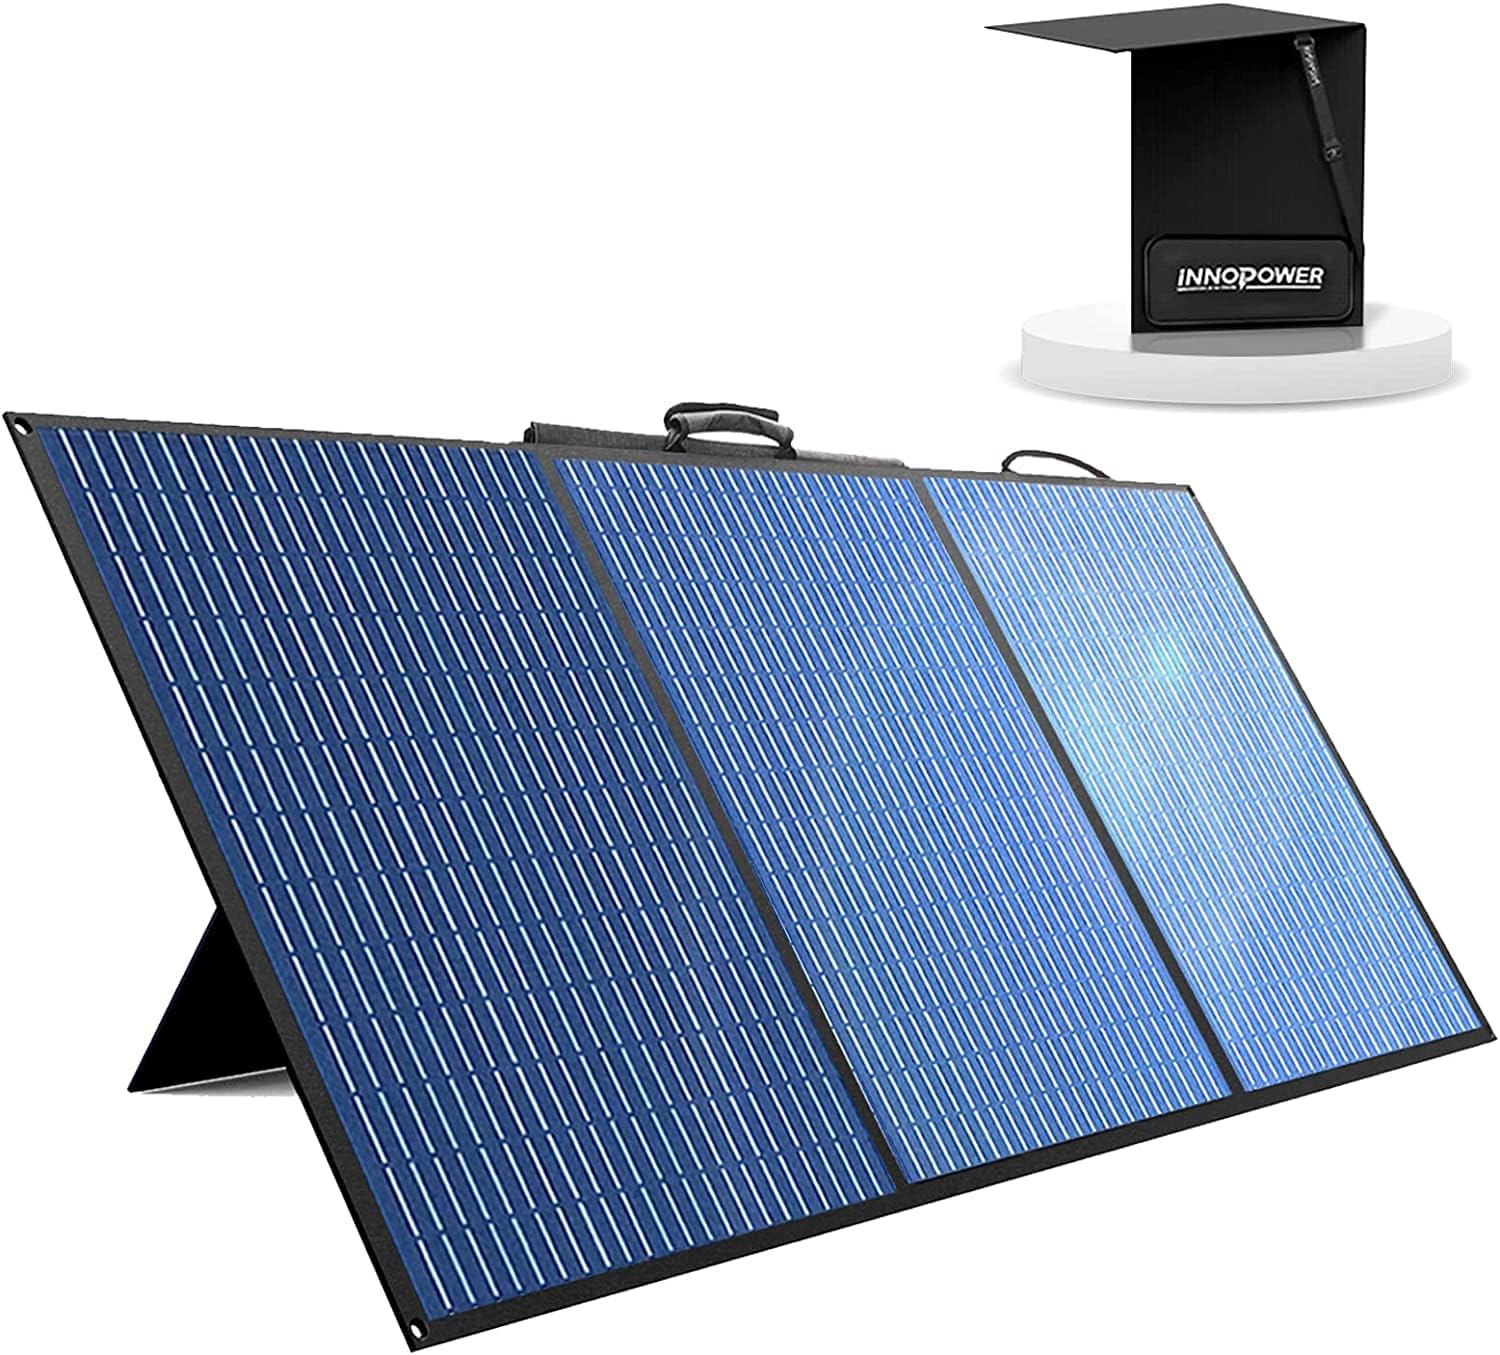 Bild zu 100 Watt Innopower 2-in-1 Solarpanel mit verstellbarem Ständer für 130,99€ (Sonst: 189,99€)